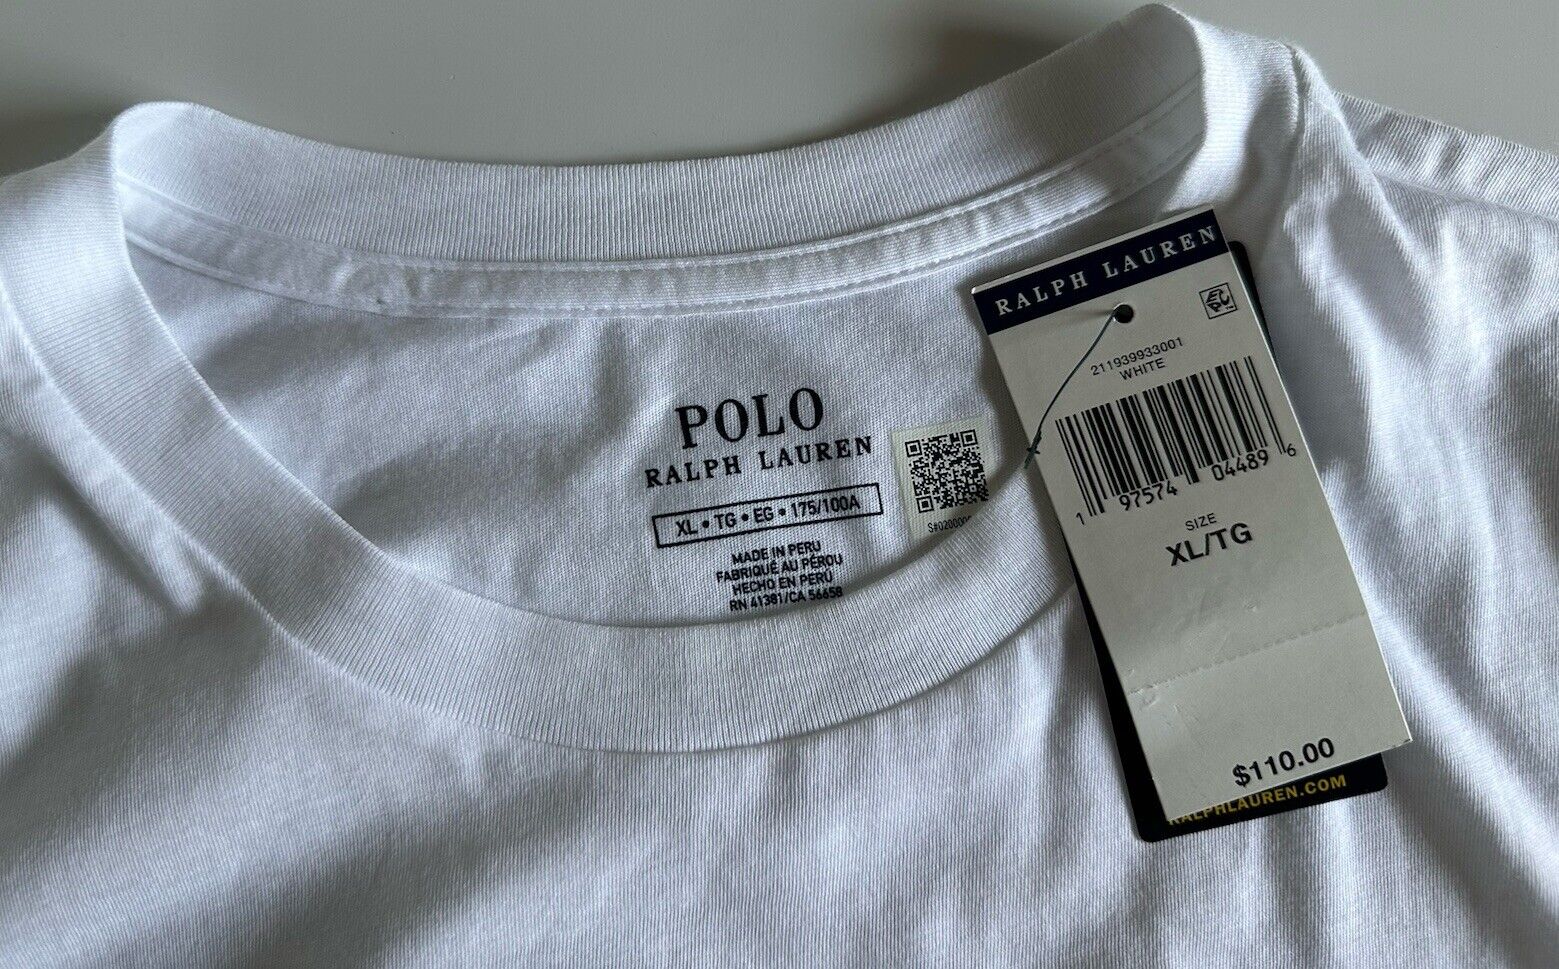 СЗТ $110 Polo Ralph Lauren Bear Белая хлопковая футболка с длинными рукавами Top XL